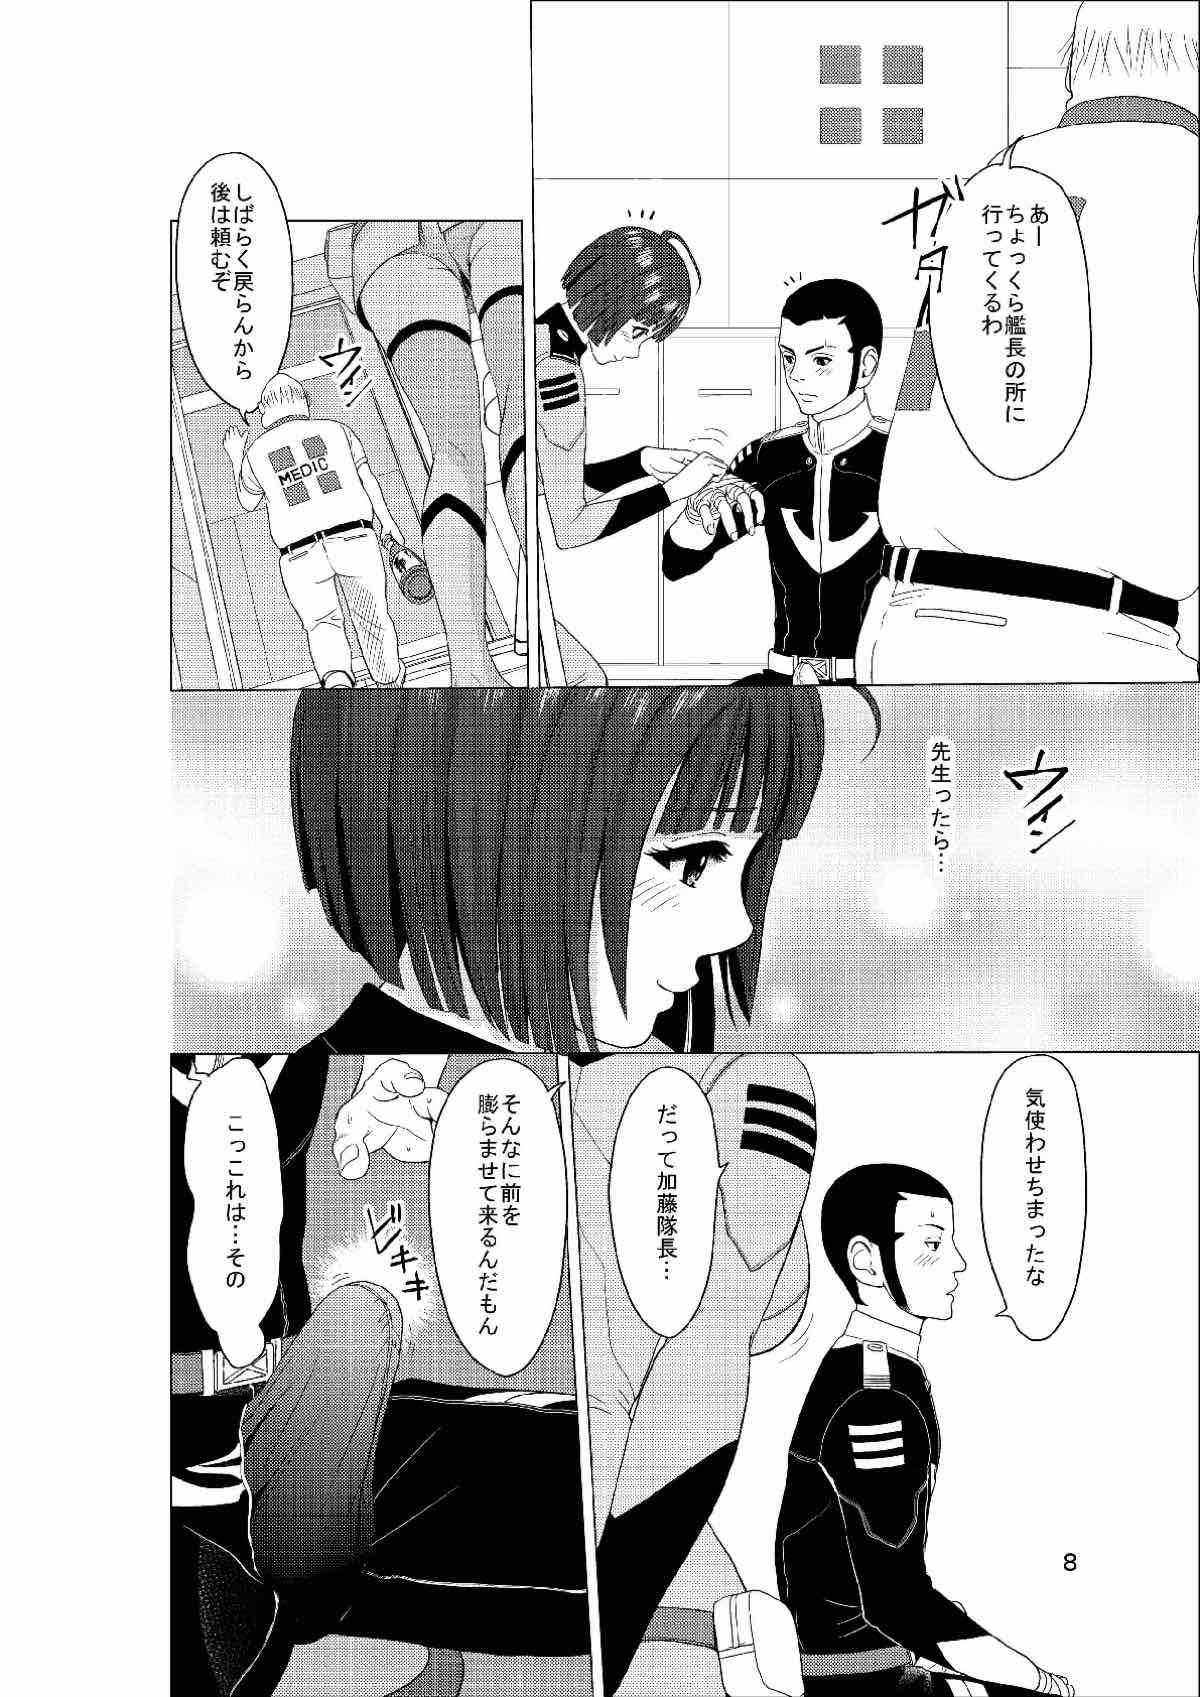 Amature Porn Makoto 21QQ - Space battleship yamato Couples - Page 7